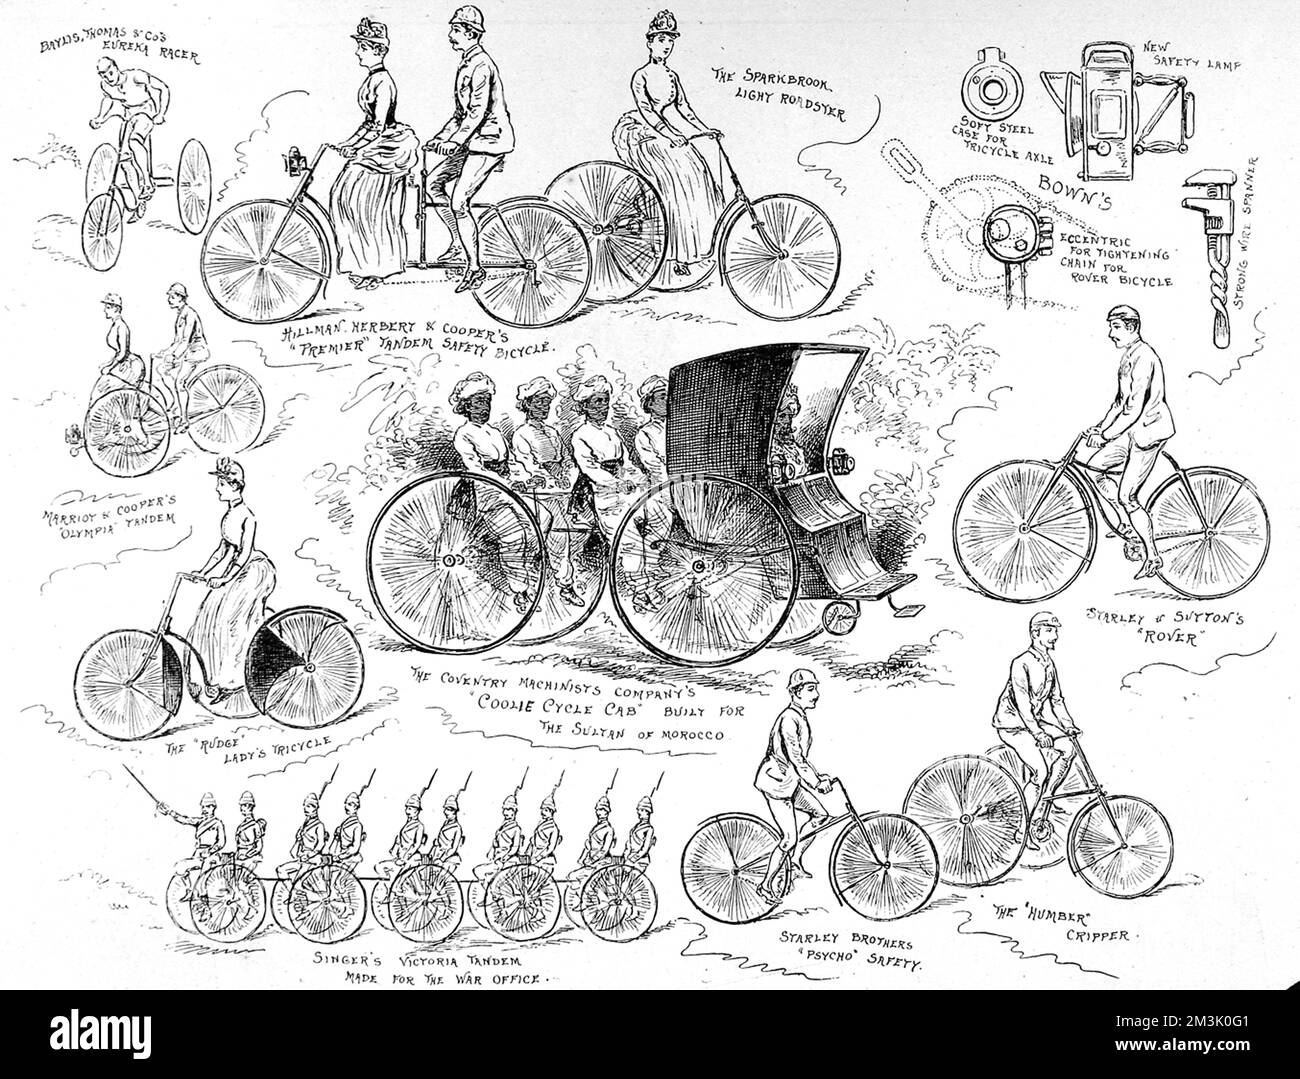 Selezione di biciclette in esposizione allo Stanley Show del 1888. Nel centro si trova il 'Coolie Cycle Cab' della Coventry Machinists Company costruito per il Sultano del Marocco' e in basso a sinistra, il 'Singer's Victoria Tandem Made for the War Office'. 1888 Foto Stock